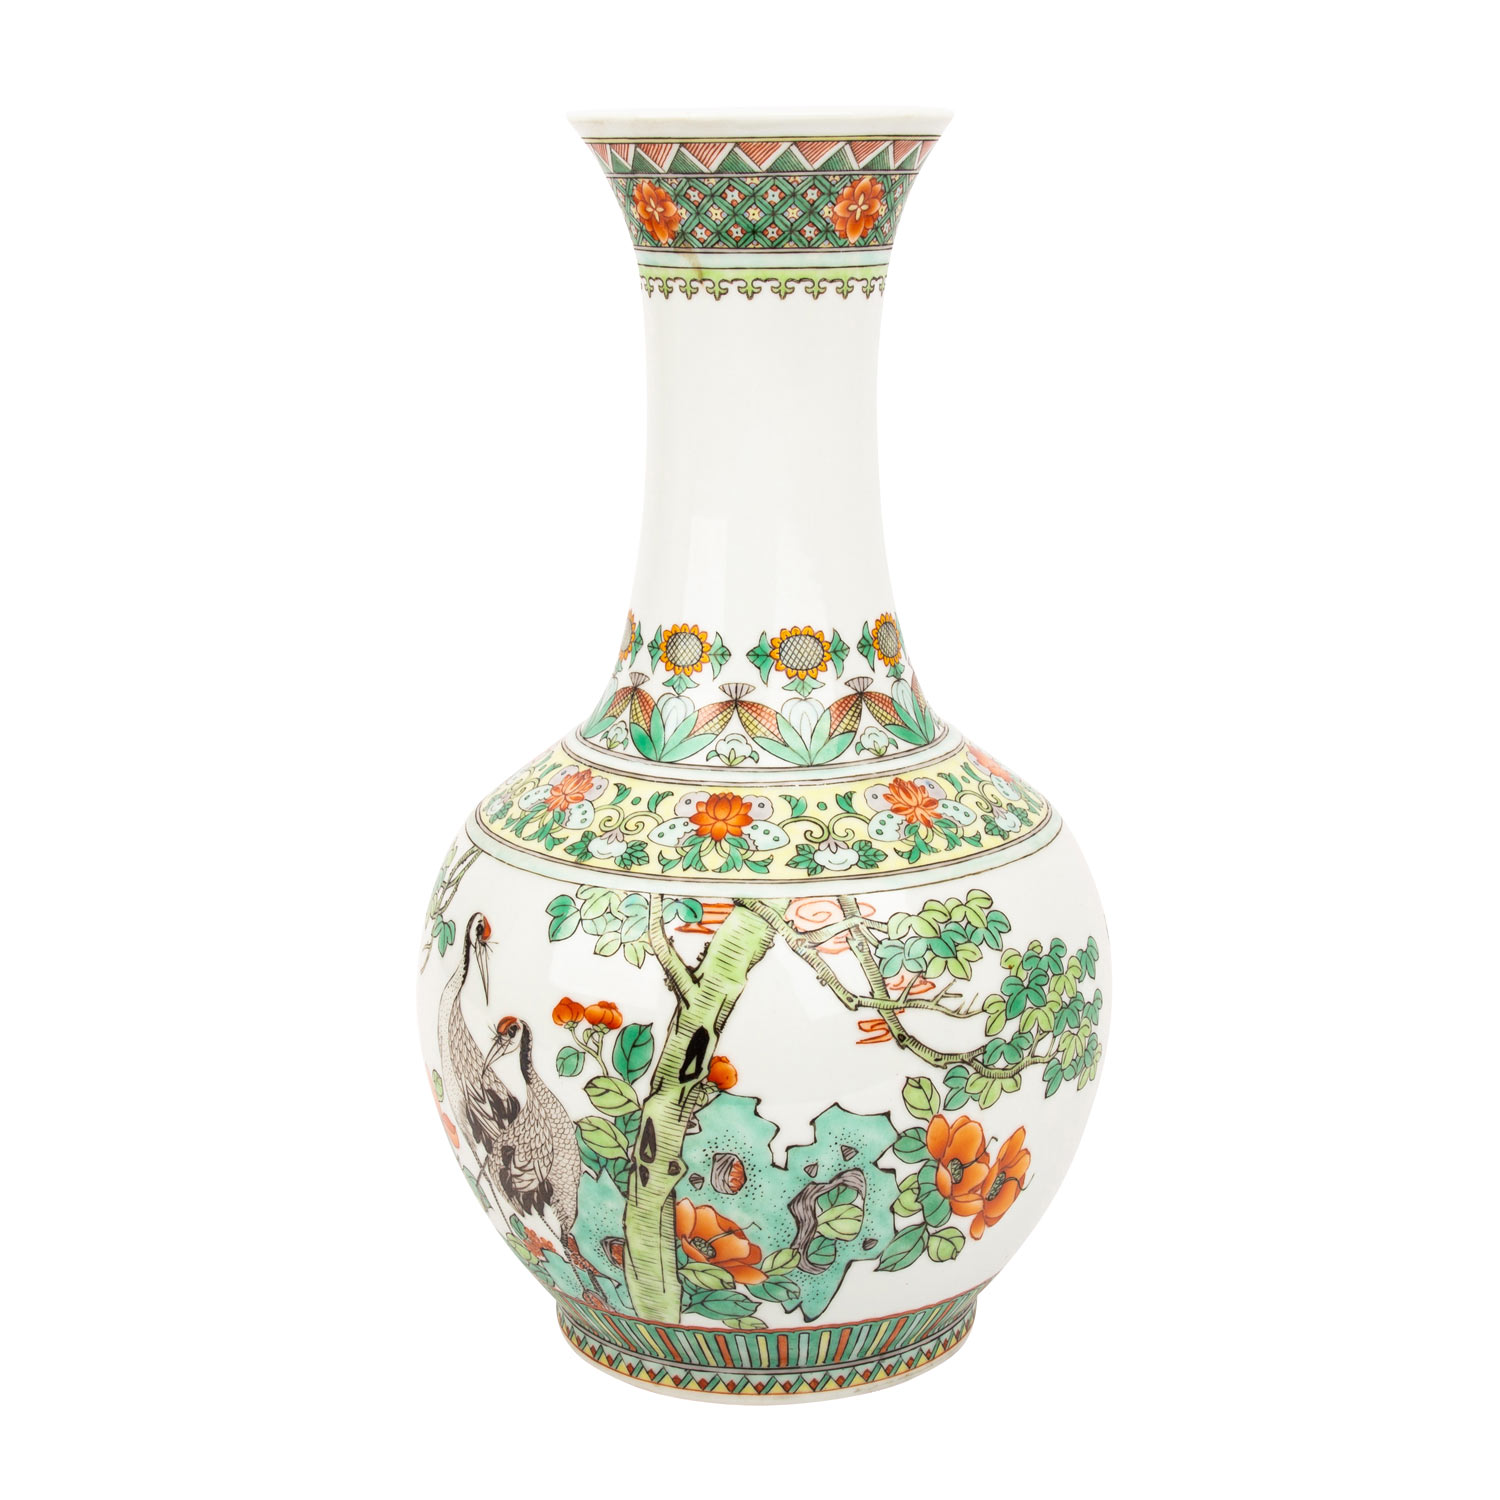 Langhalsvase mit famille verte-Malerei. CHINA, 20. Jh.. Kugelige Vase mit hohem Hals, dekoriert in